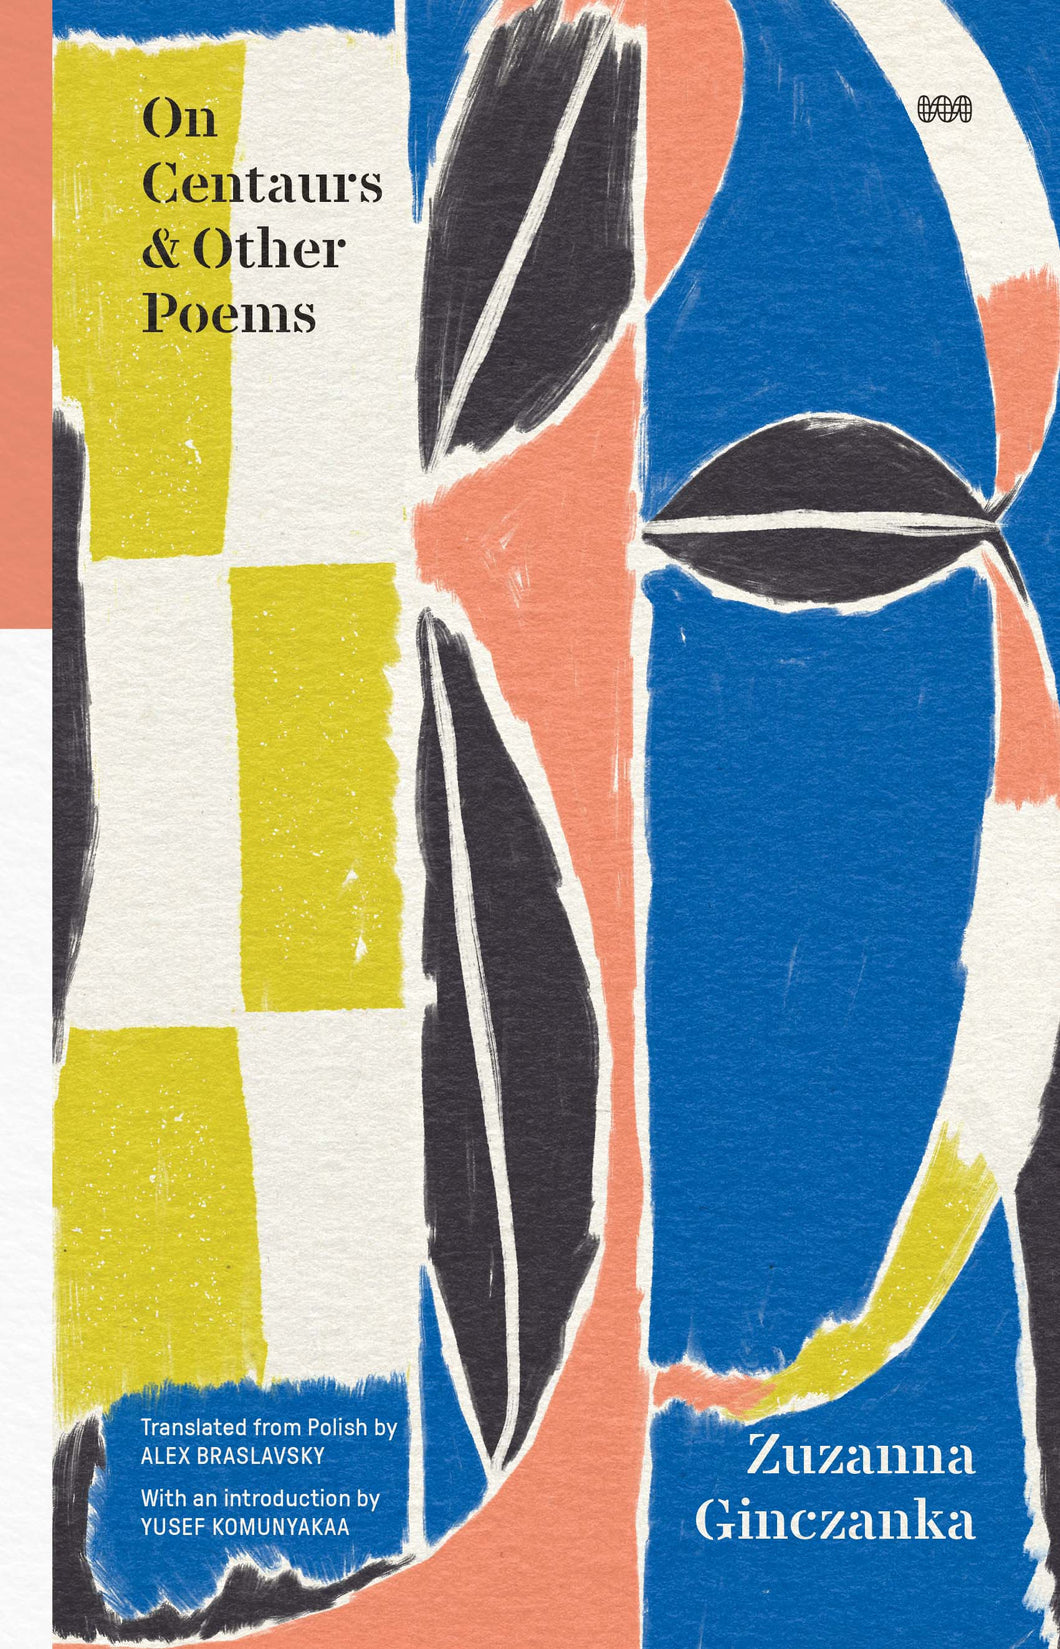 Ginczanka, Zuzanna: On Centaurs & Other Poems